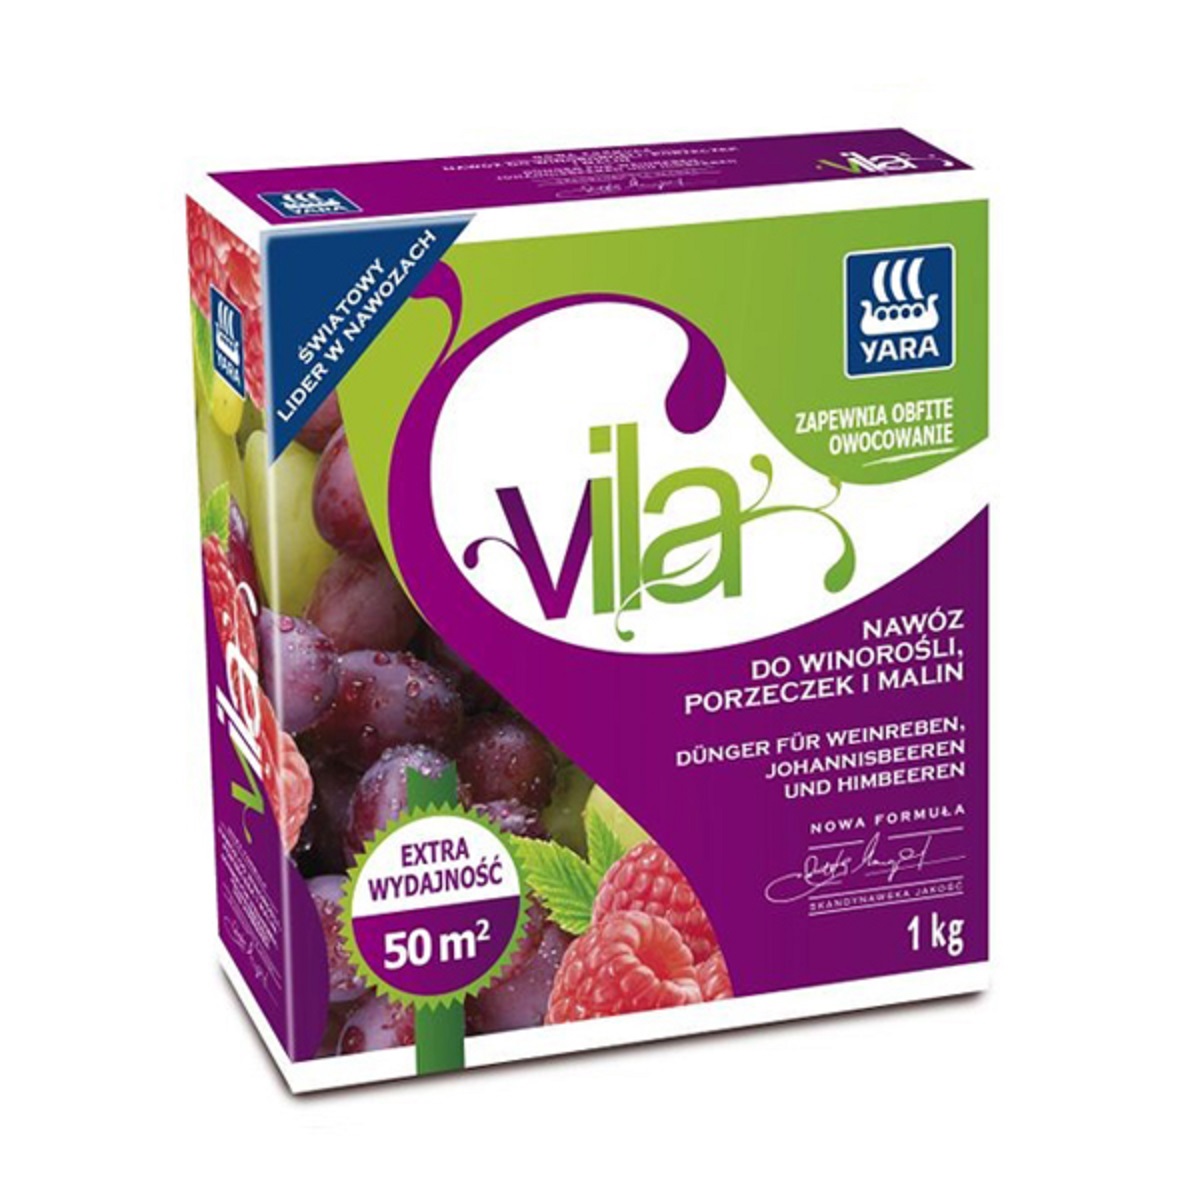 Удобрение Yara Vila для винограда, малины, ежевики, смородины 1 кг / Яра Вила для винограда, малины, ежевики, смородины